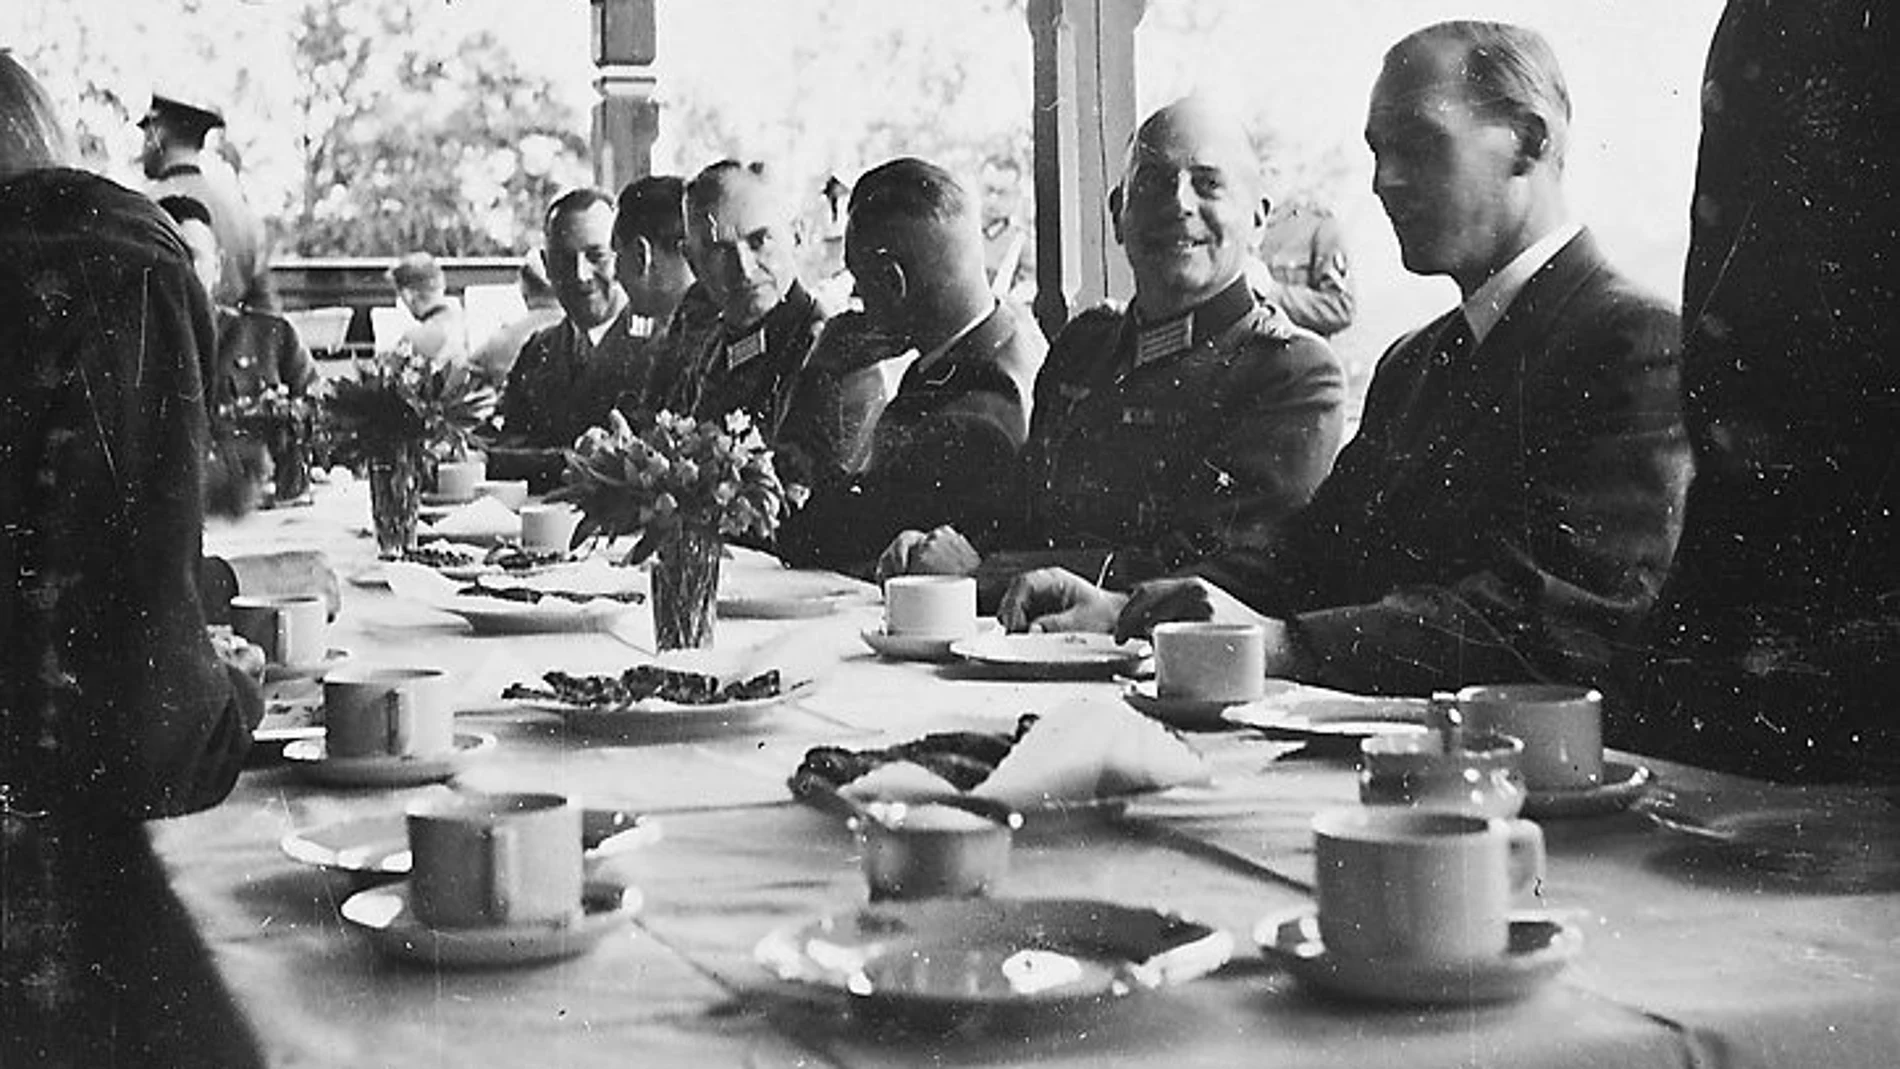 Un grupo de miembros del partido nazi fotografiado en Noruega en 1942 degustando café al término de una comida